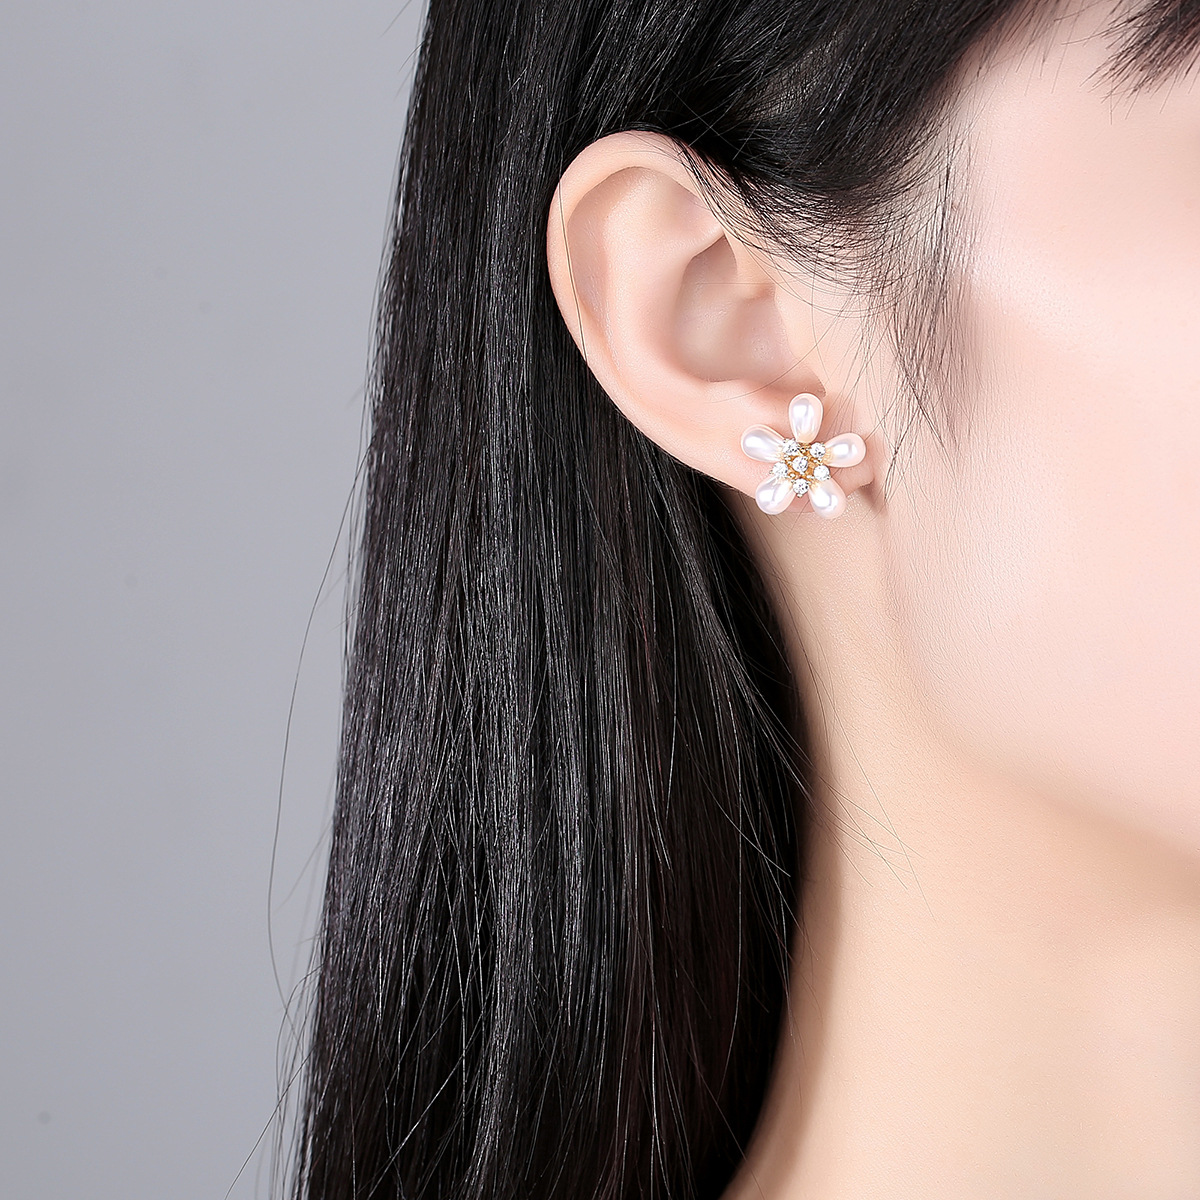 Colors earrings pearl stud earrings for women